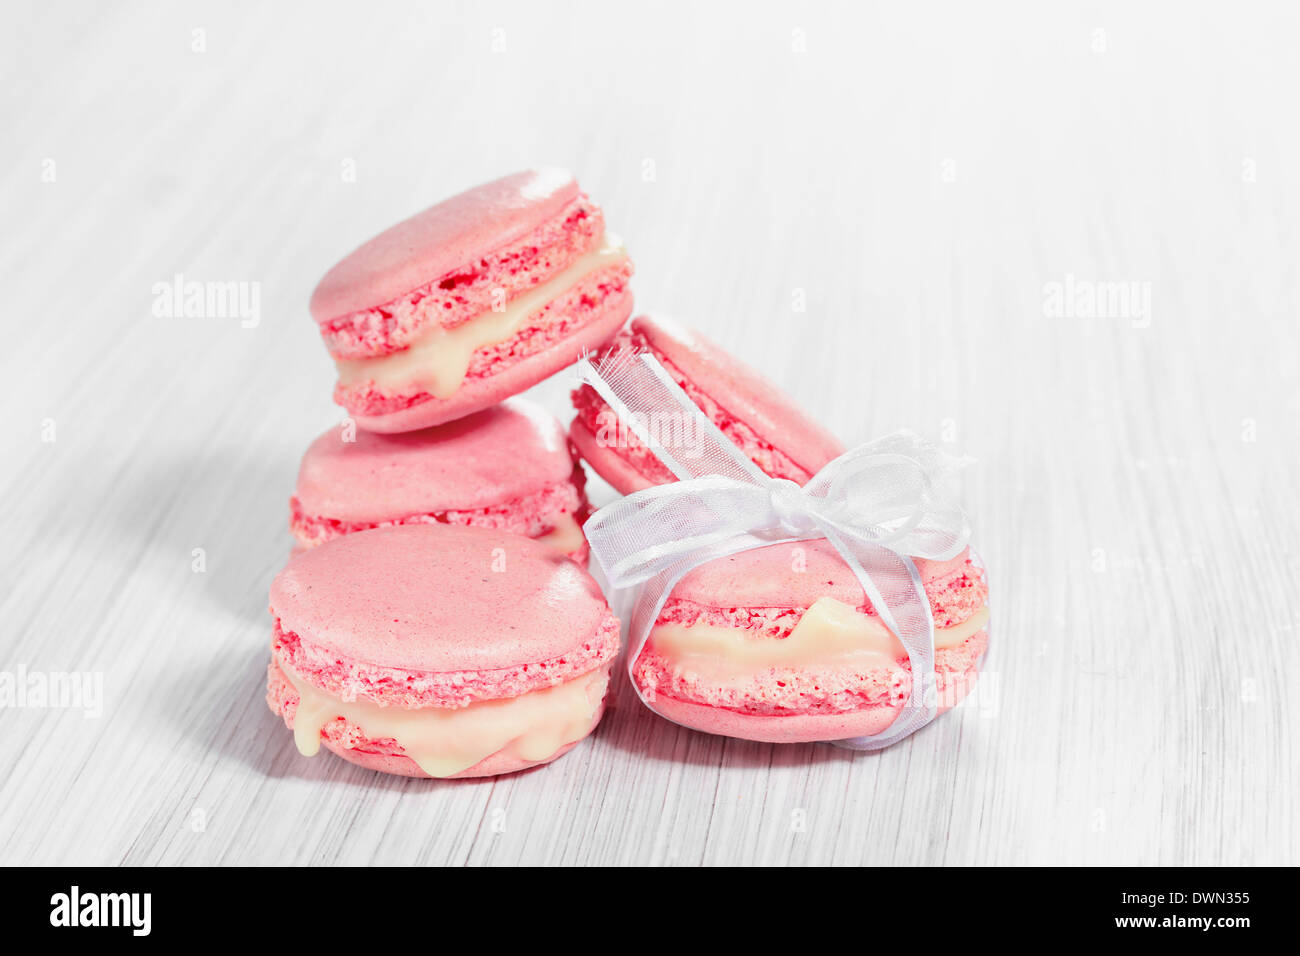 Rosa französische Macarons auf einem hölzernen Hintergrund. Stockfoto